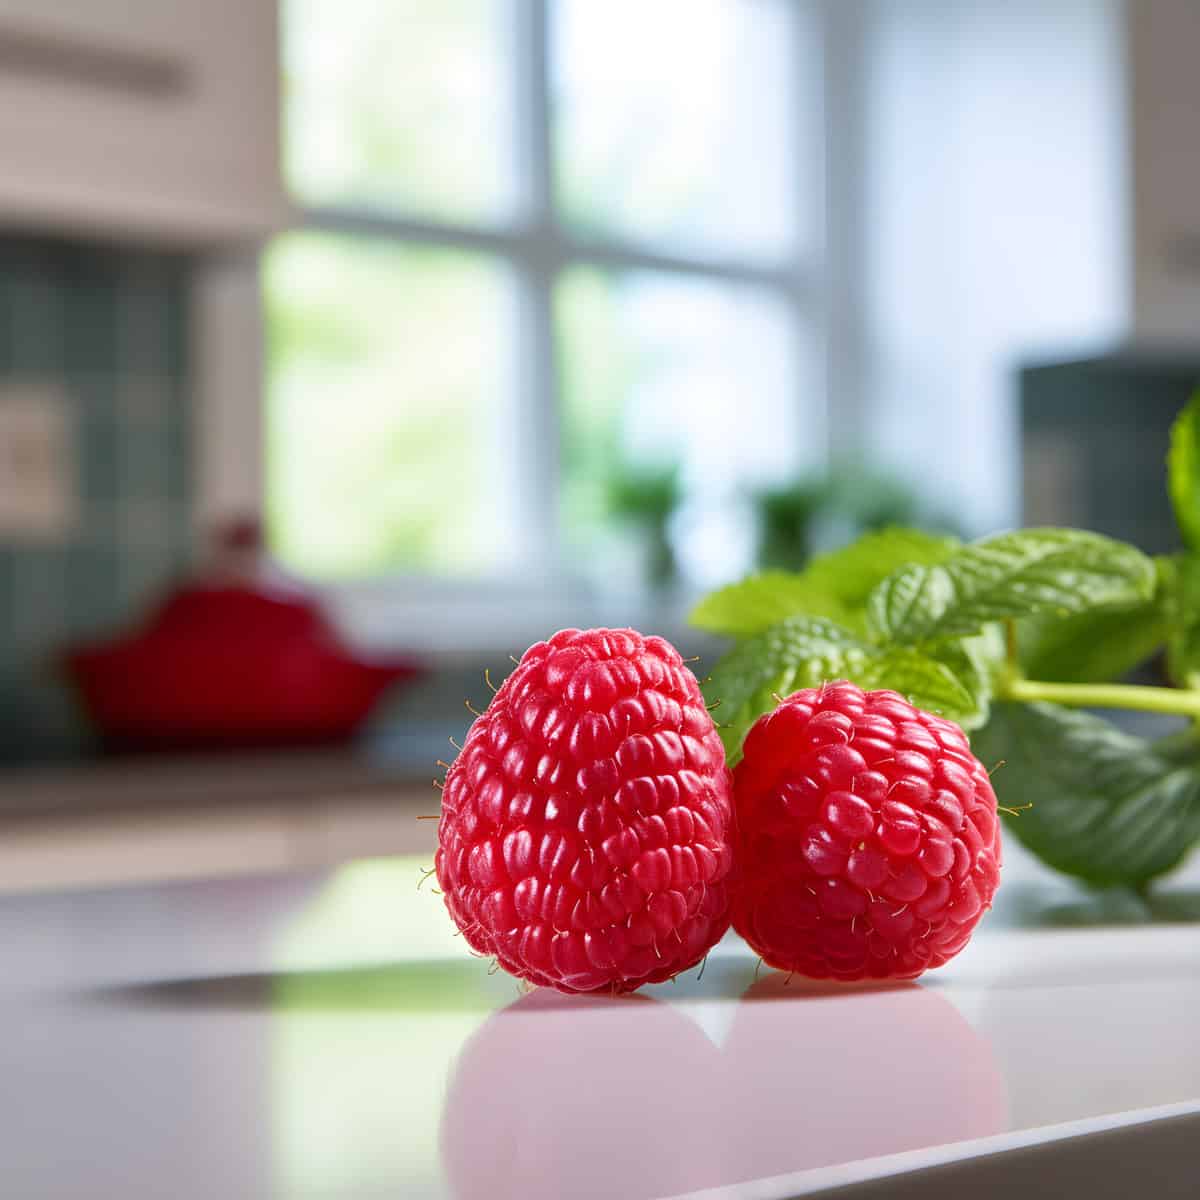 Hawaiian Raspberry on a kitchen counter